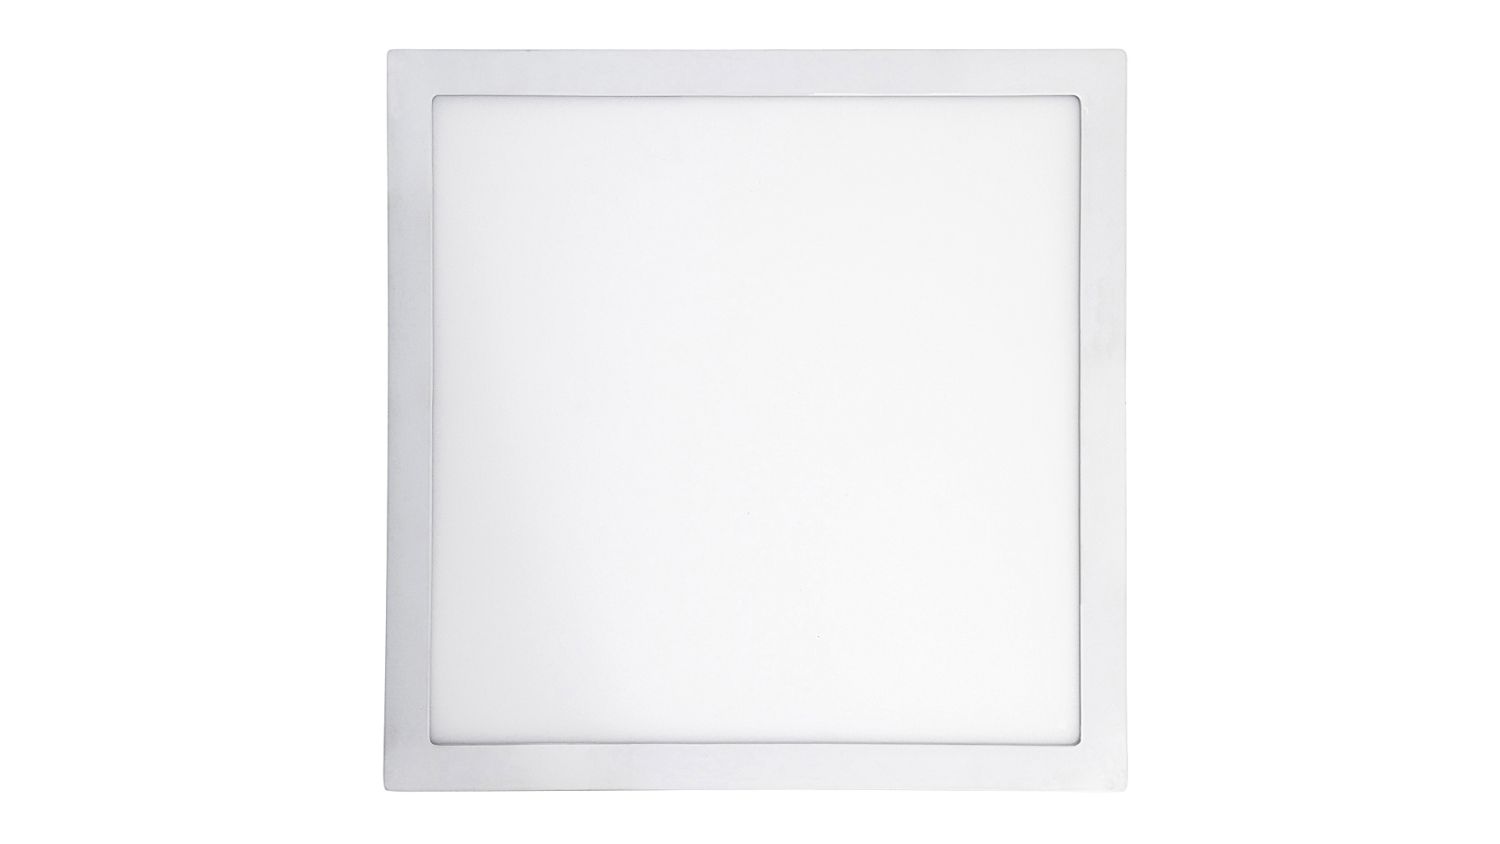 Flache LED Deckenlampe Weiß 36W blendarm Modern